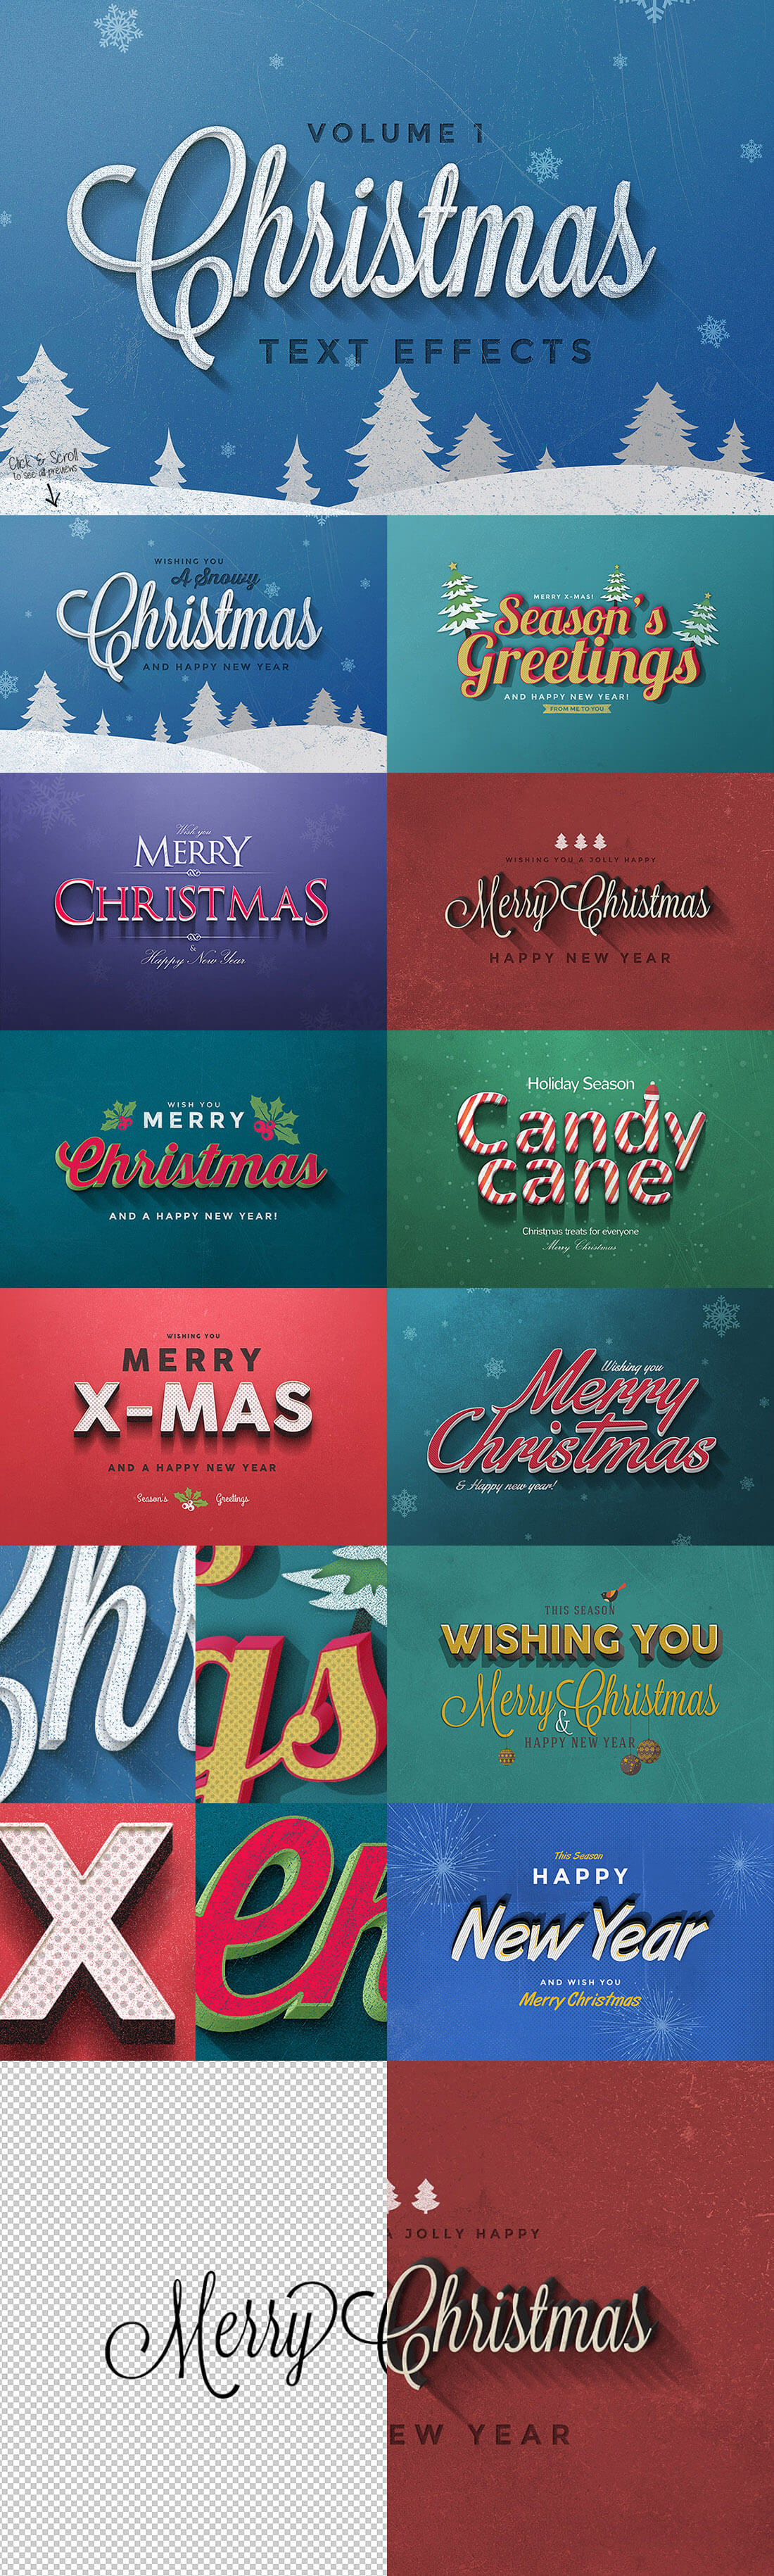 圣诞特典：400+圣诞主题设计素材包 Christmas Bundle 2016（2.35GB, AI, EPS, PSD 格式）插图(2)